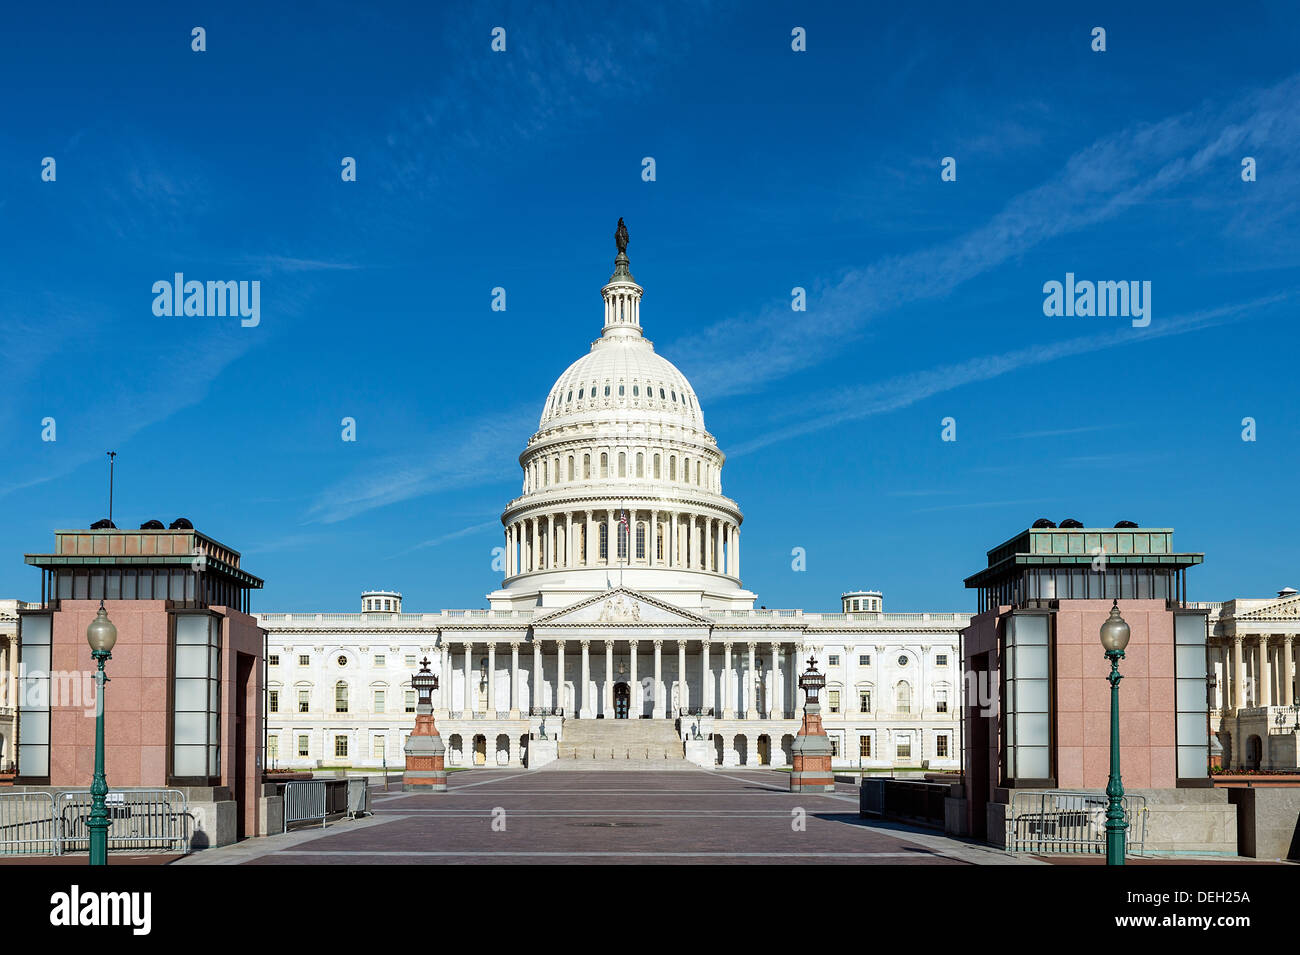 El edificio del Capitolio de los Estados Unidos, Washington D.C., EE.UU. Foto de stock